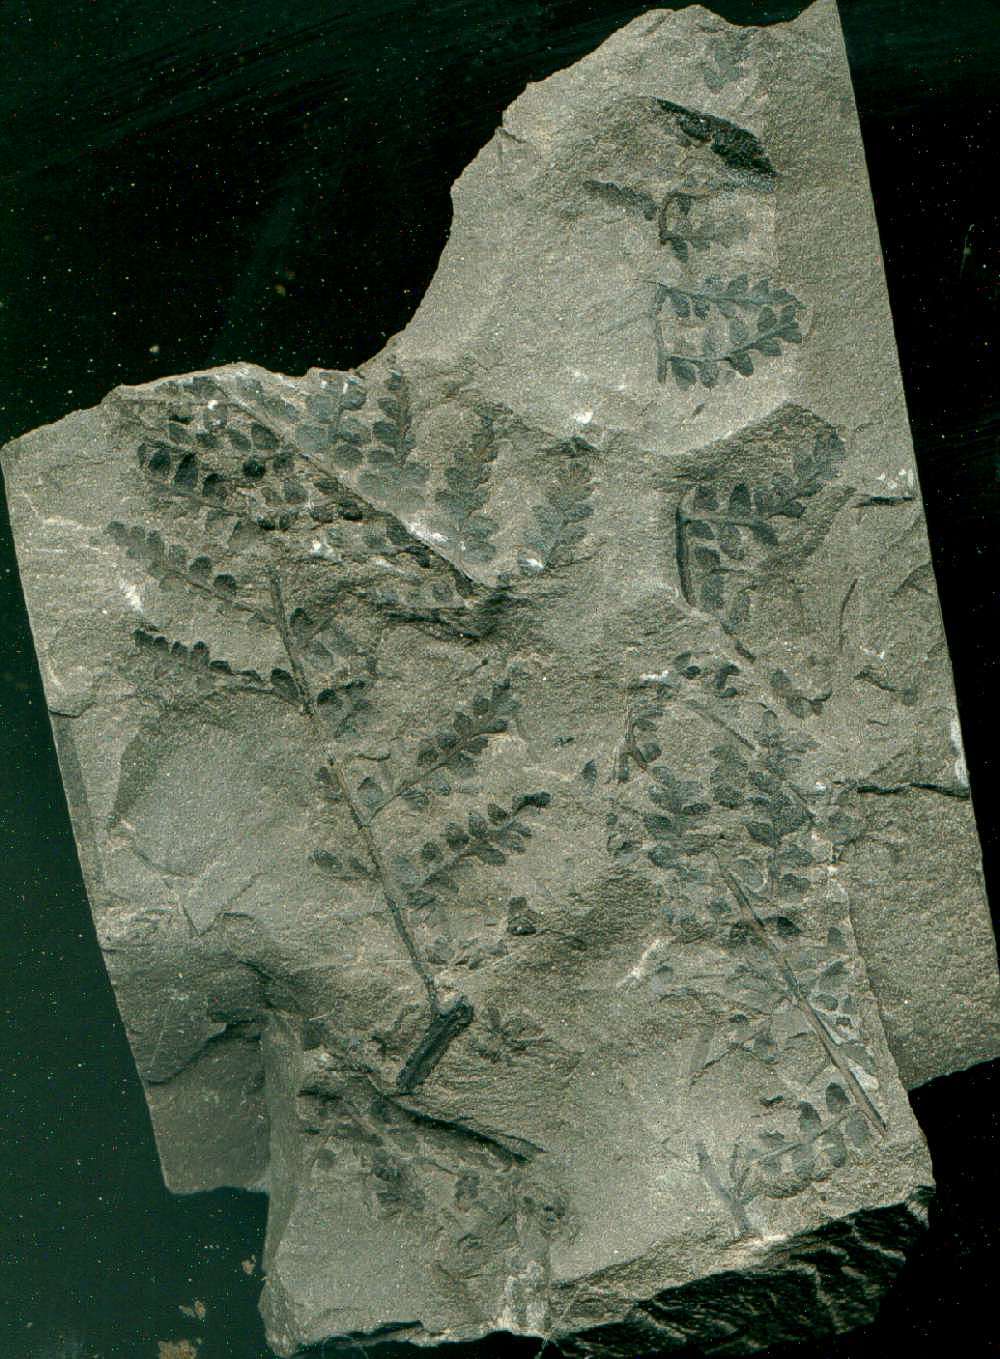 rare Carboniferous plant